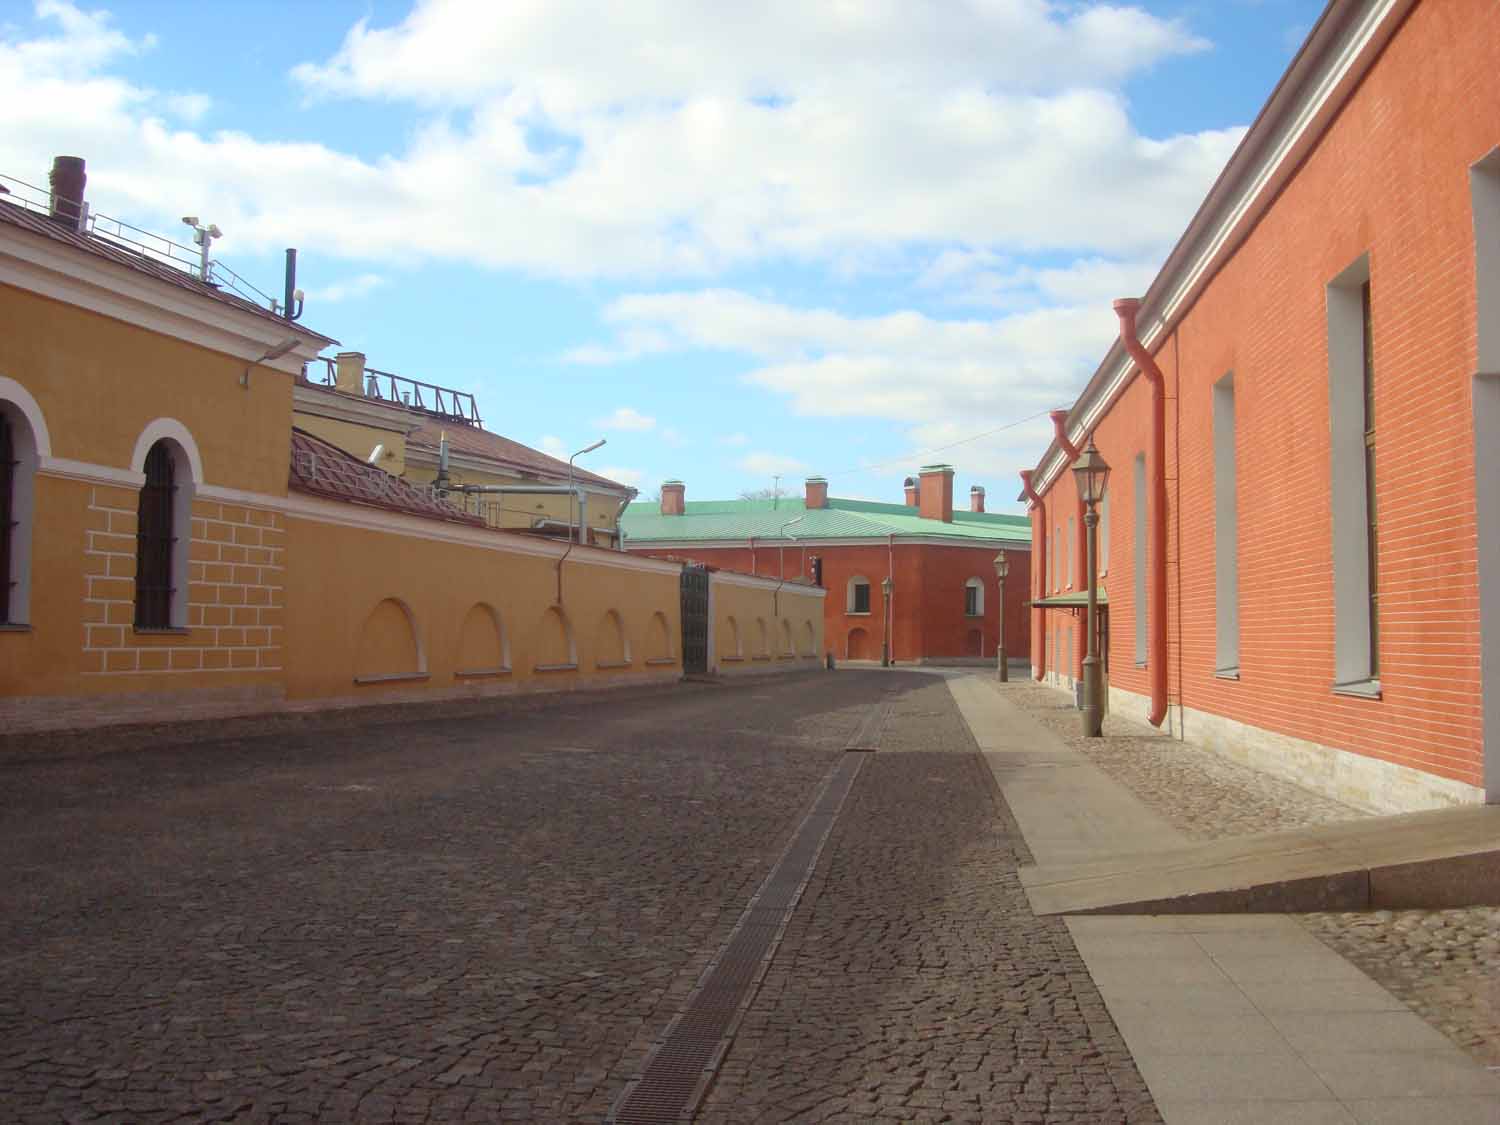 Петропавловская крепость (66)